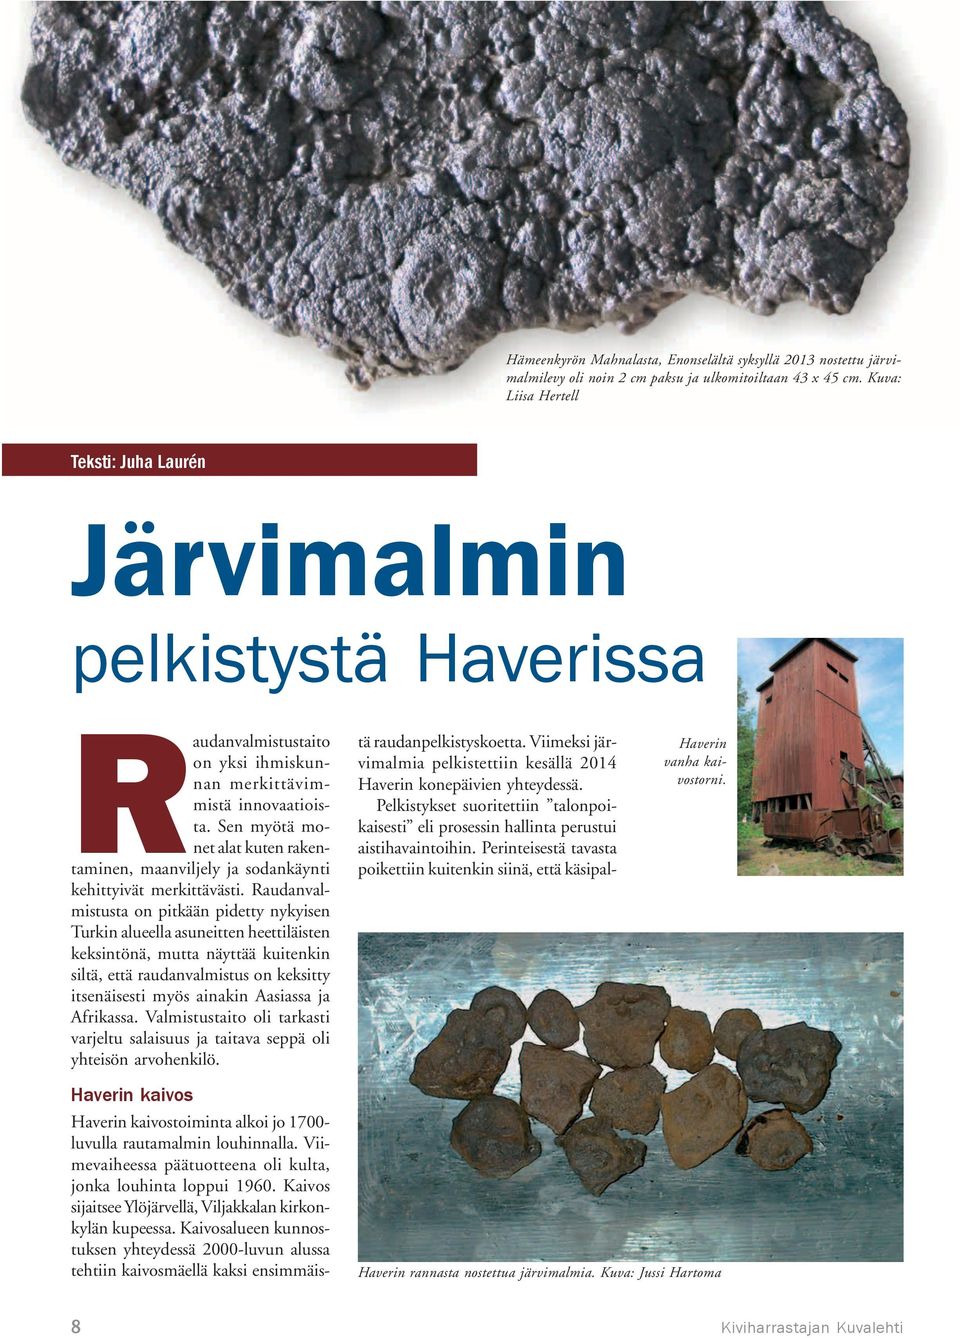 Kaivos sijaitsee Ylöjärvellä, Viljakkalan kirkonkylän kupeessa.